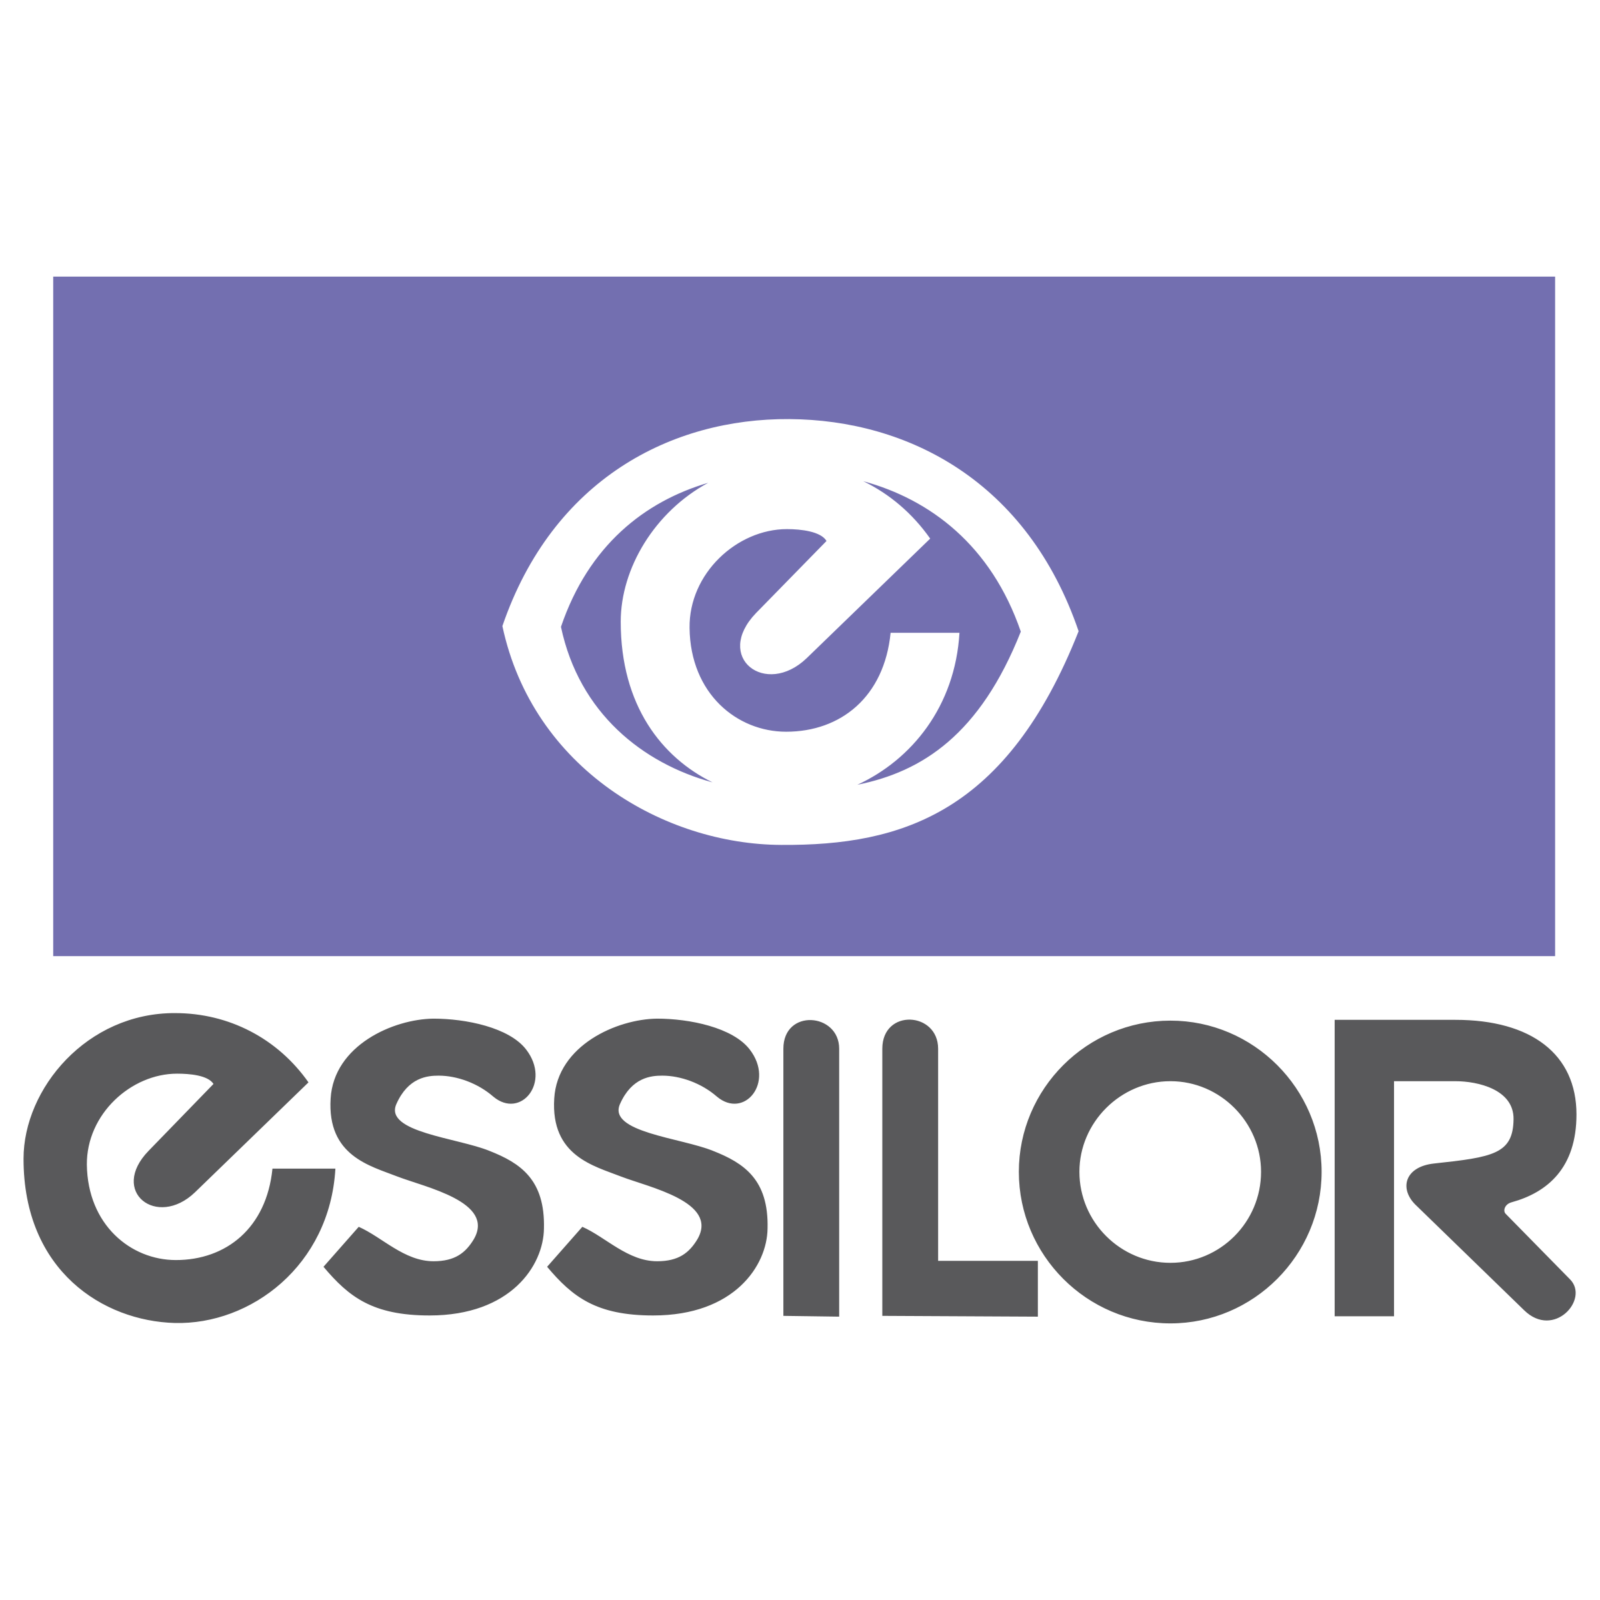 Essilor Logo